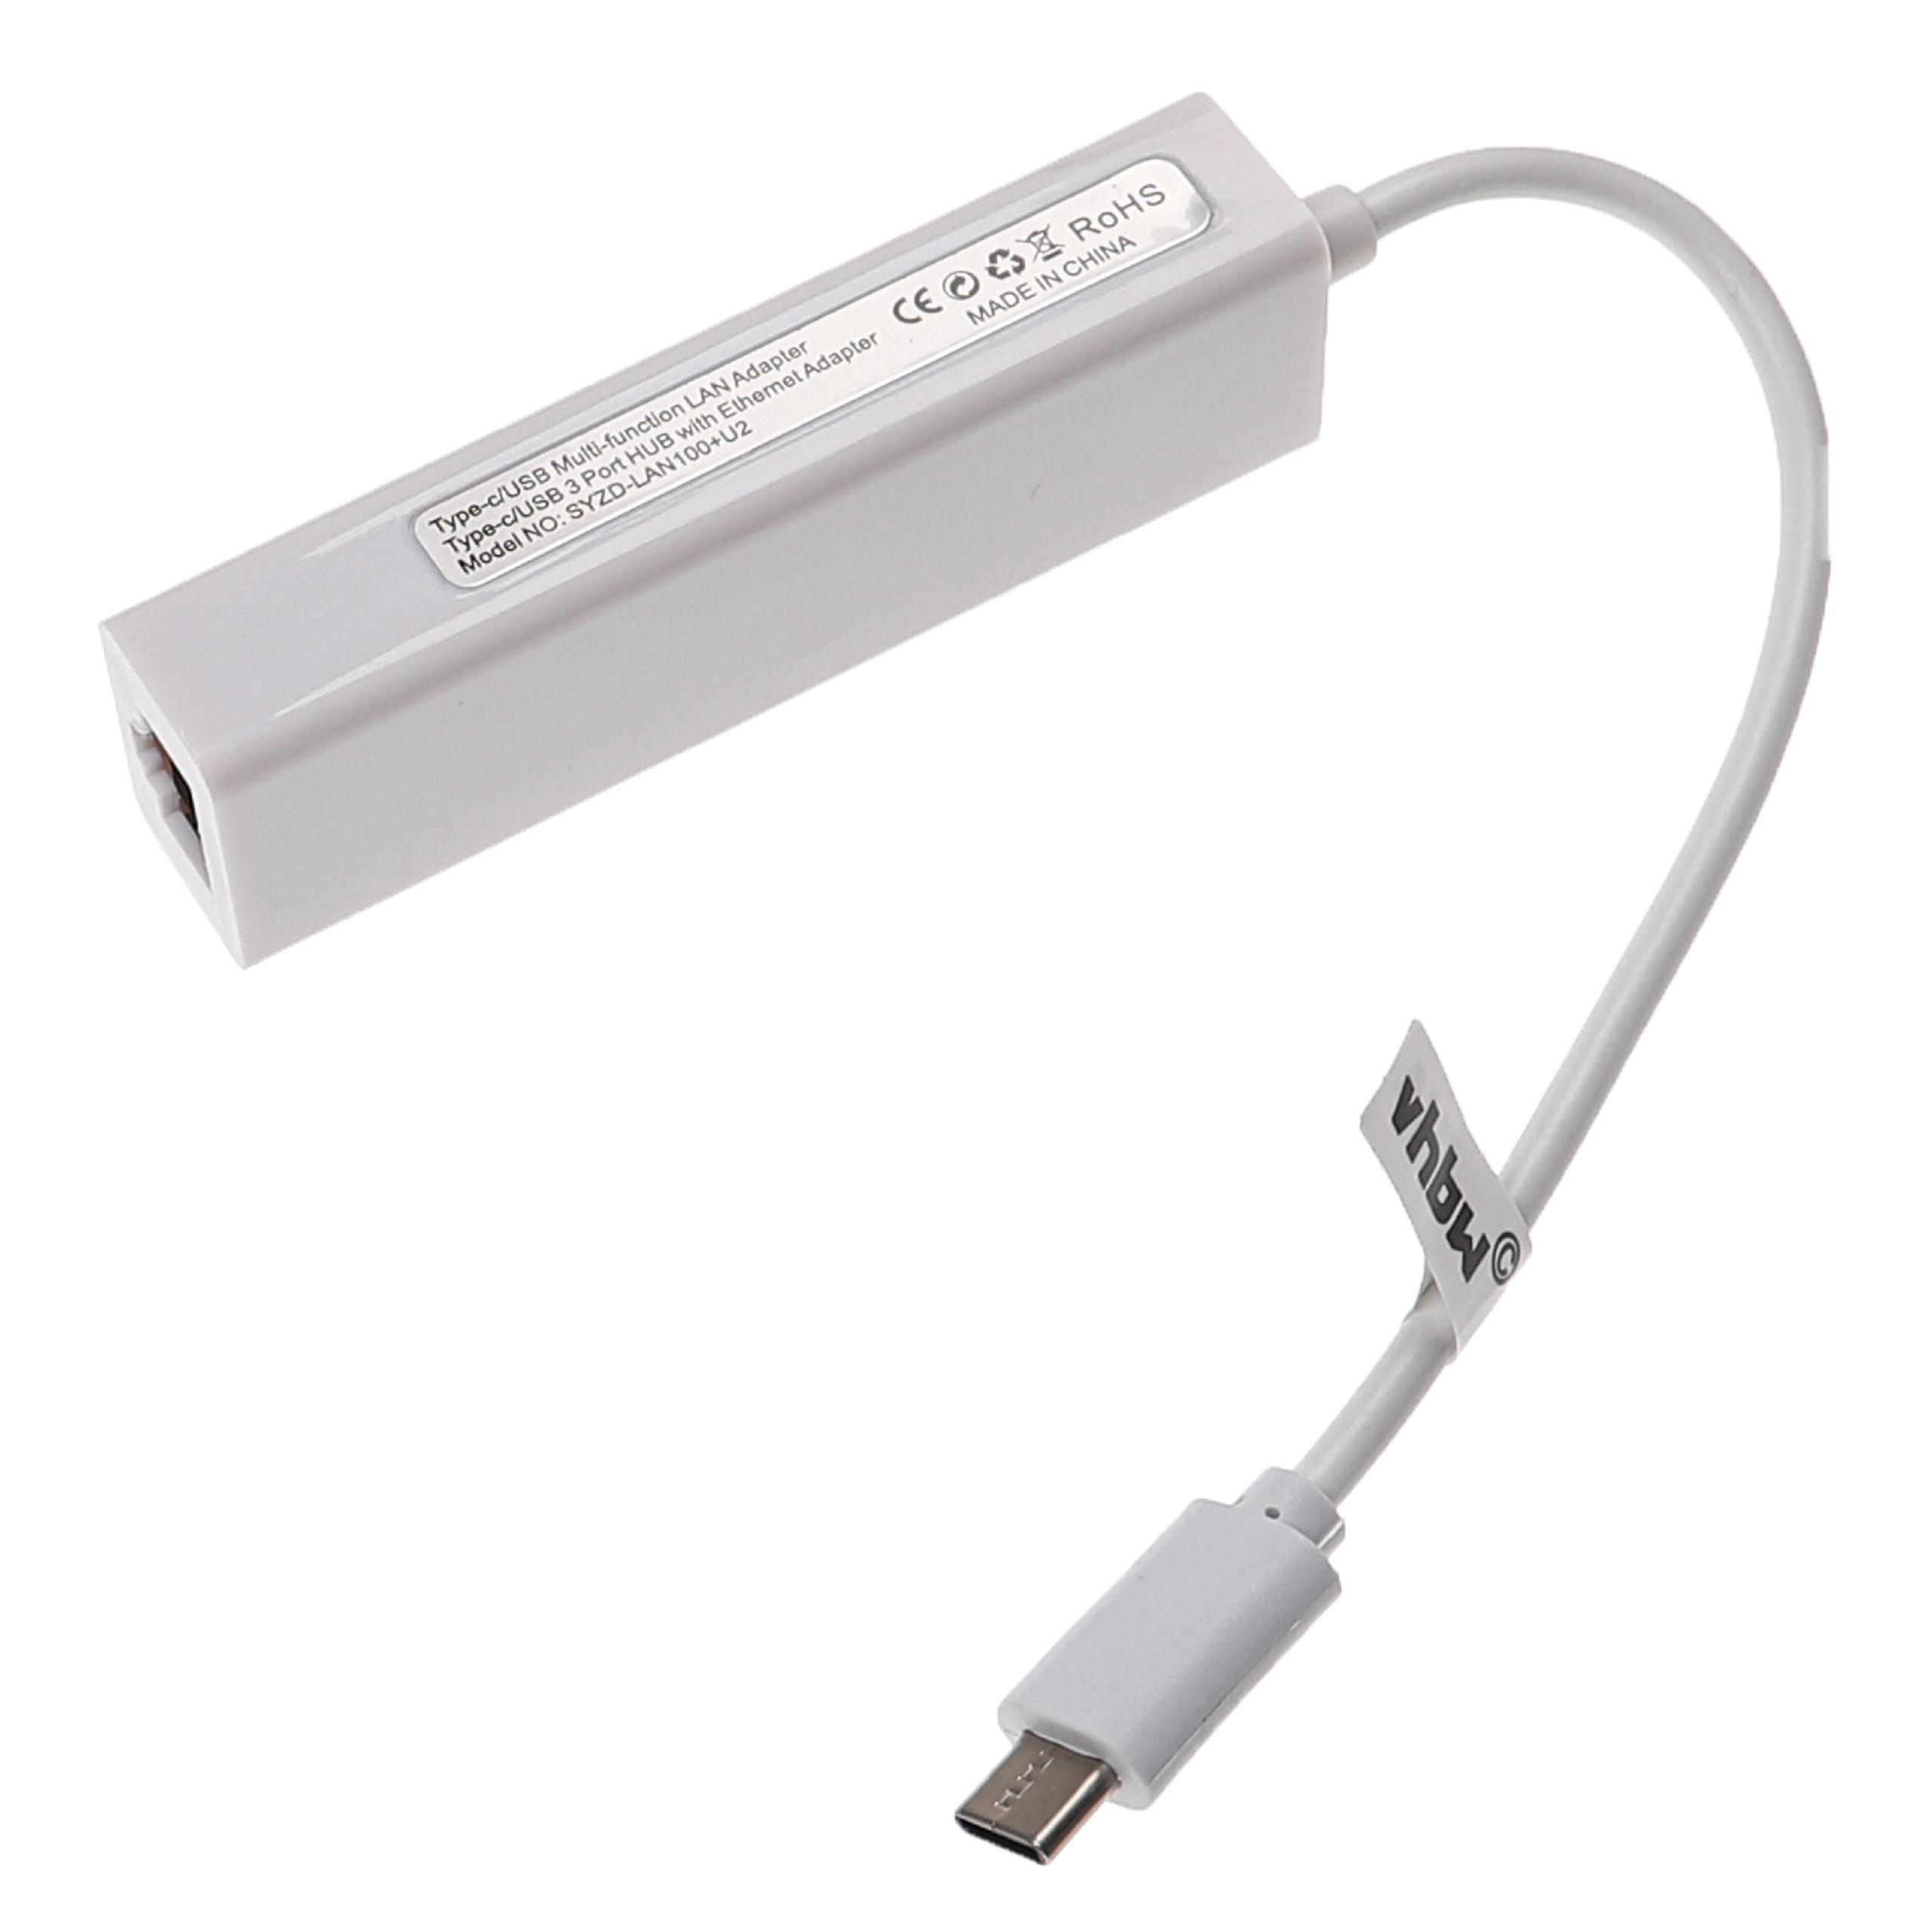 Adattatore Ethernet da USB-C (m) a RJ45 (f) per laptop, notebook, PC + 3 porte USB-A aggiuntive